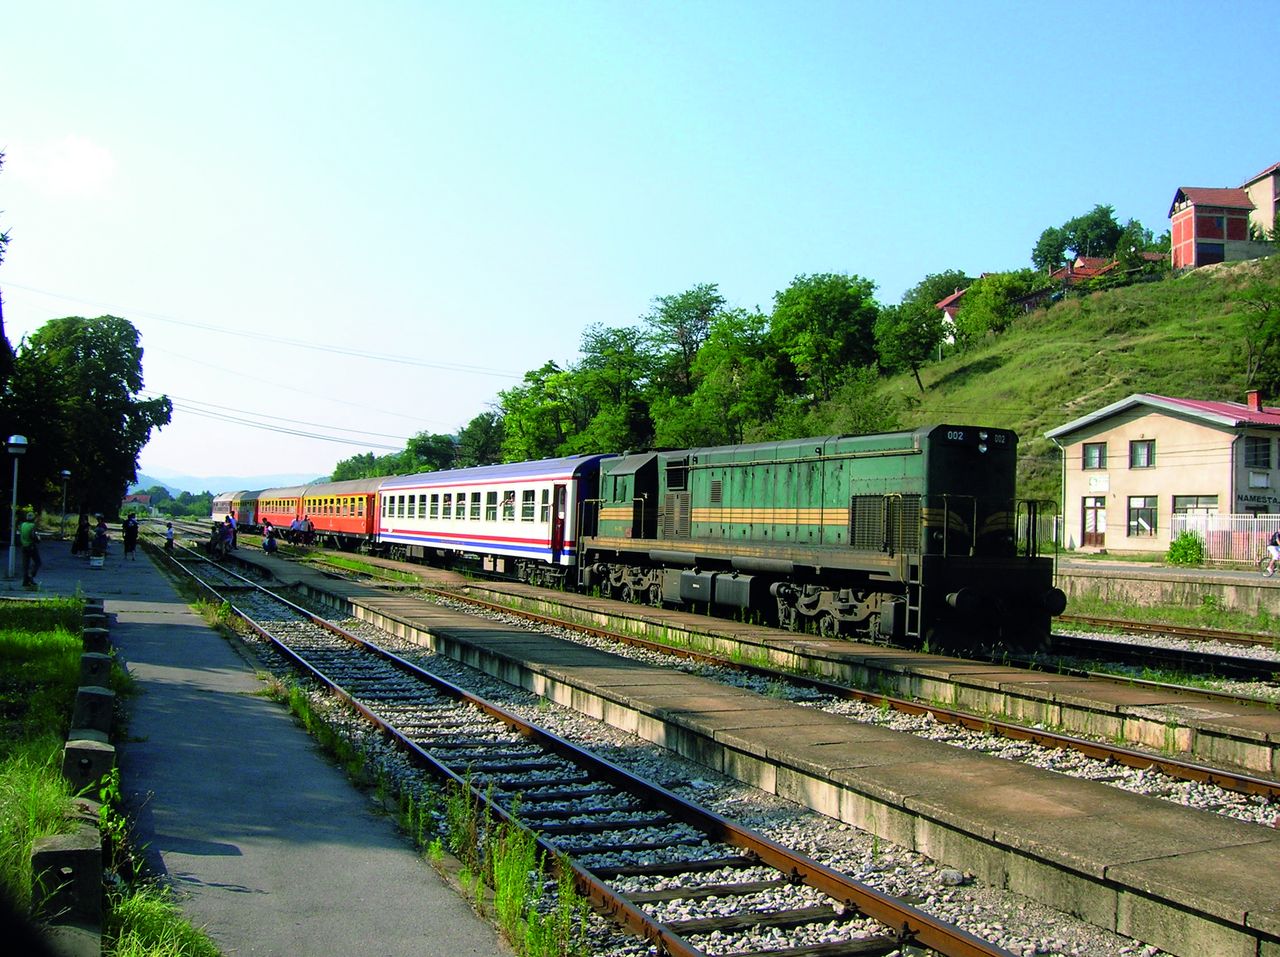 A jelentős teherforgalmú Nis–Dimitrovgrad vasútvonal villamosítása hamarosan megkezdődik, ami a vonal részleges vagy teljes lezárásával jár majd. Ezzel a napi két nemzetközi vonatpár (képünkön a Balkán expressz) közlekedése is kiszámíthatatlanná válhat. Kerülő útvonal ugyanis nincs. A képre kattintva galéria nyílik (fotók: Indóház-archív | a szerző felvételei)